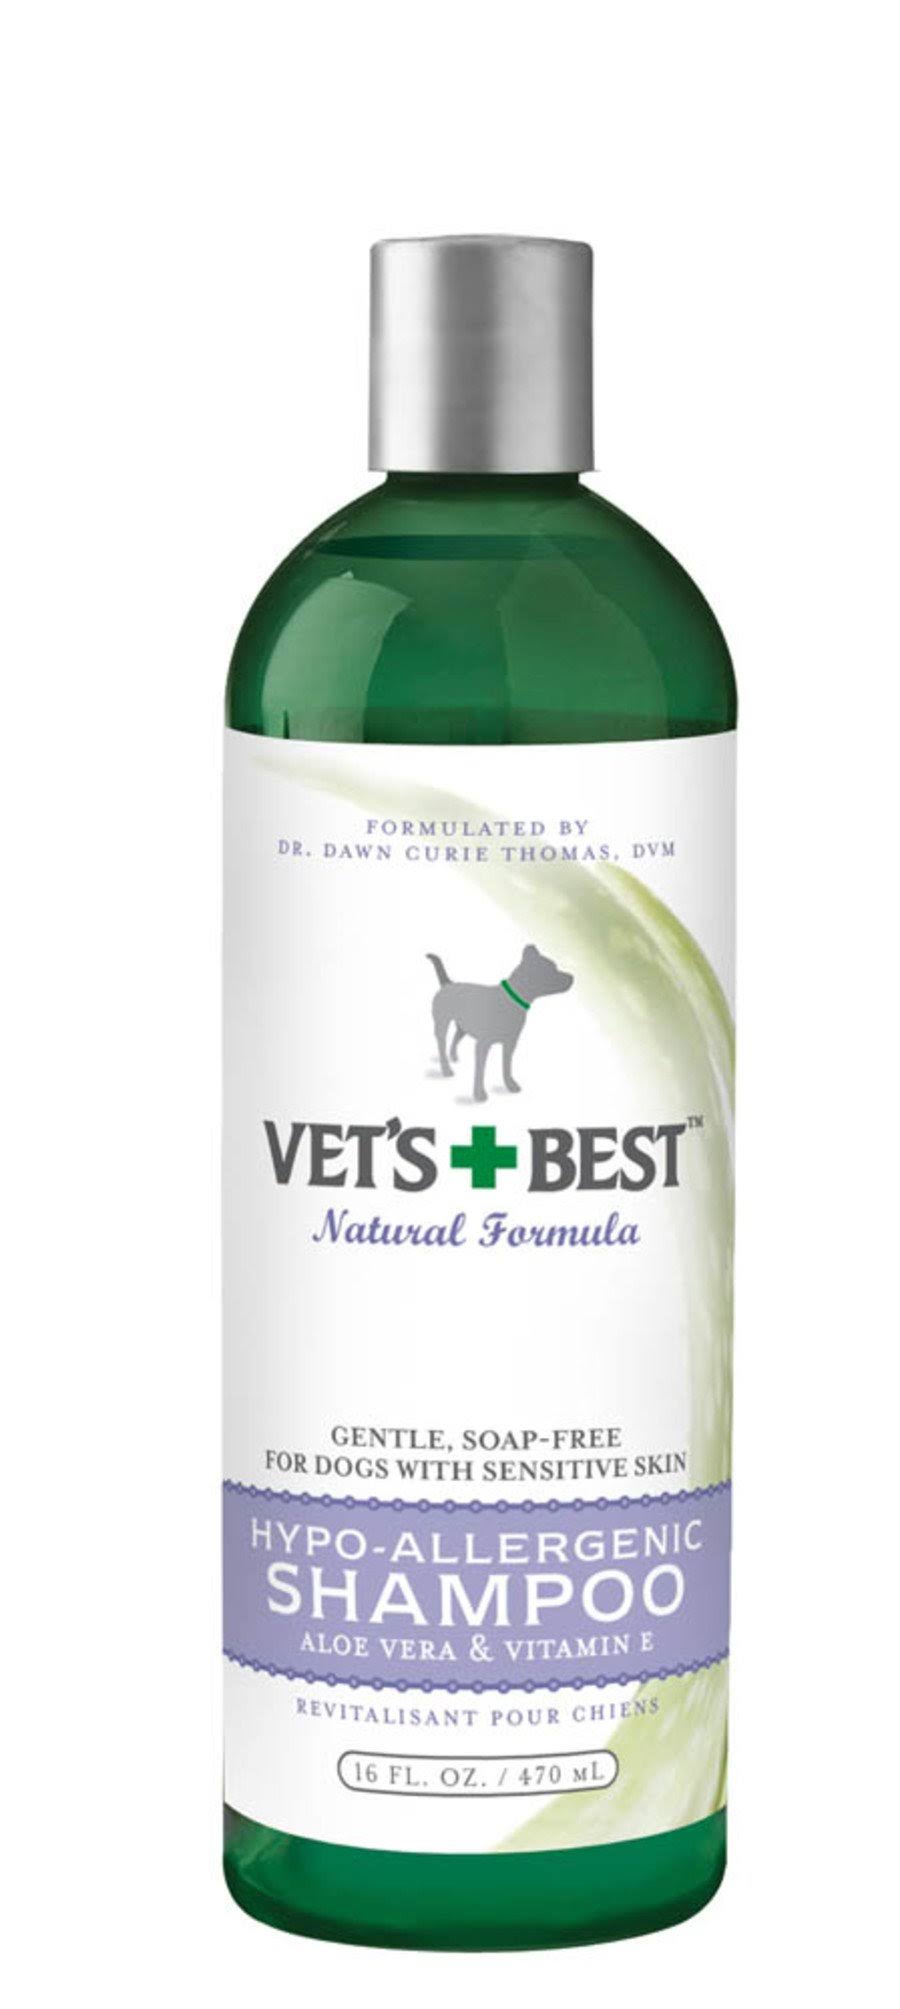 Vet's Best Hypo-allergenic Dog Shampoo - Sensitive Skin, 16oz